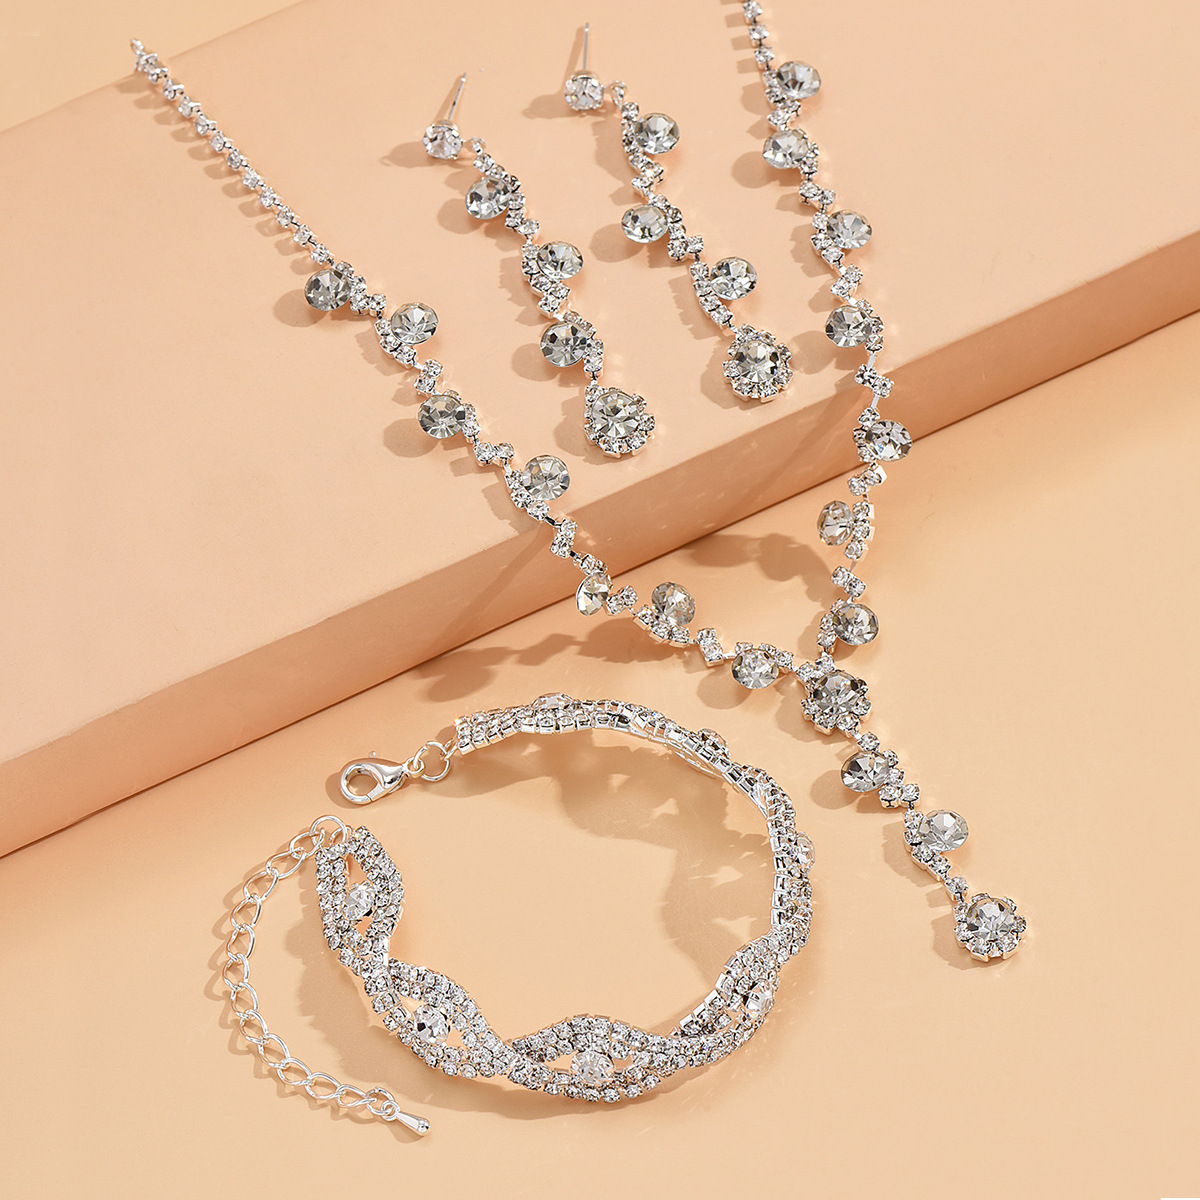 1:869-746 Silver necklace earrings bracelet set